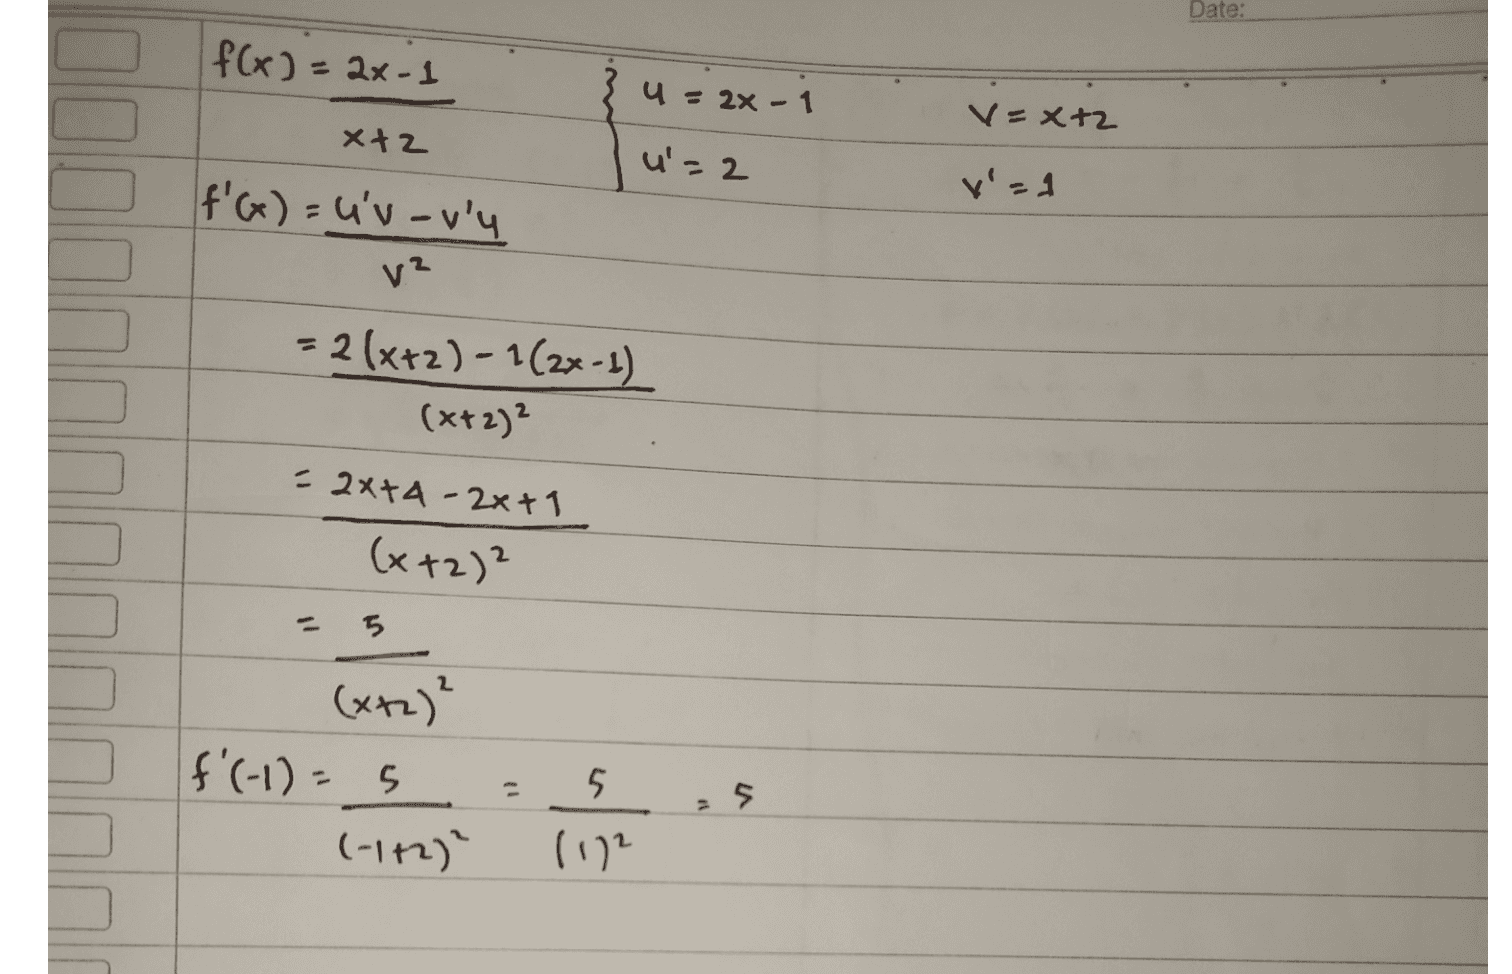 U= 2* +1 2x+1 xt 2 fcx) V-X+2 v=1 n'= 2 f'(x) = u'v-uri y2 = 2(2x+1) - 1(x+2) (Xtz)? = 4x+2 - x + 2 (x+2)² 2 3x (x+2)² - =-3 f'(-1) = 3(-1) (+1+2)² - 3 (1) (102 